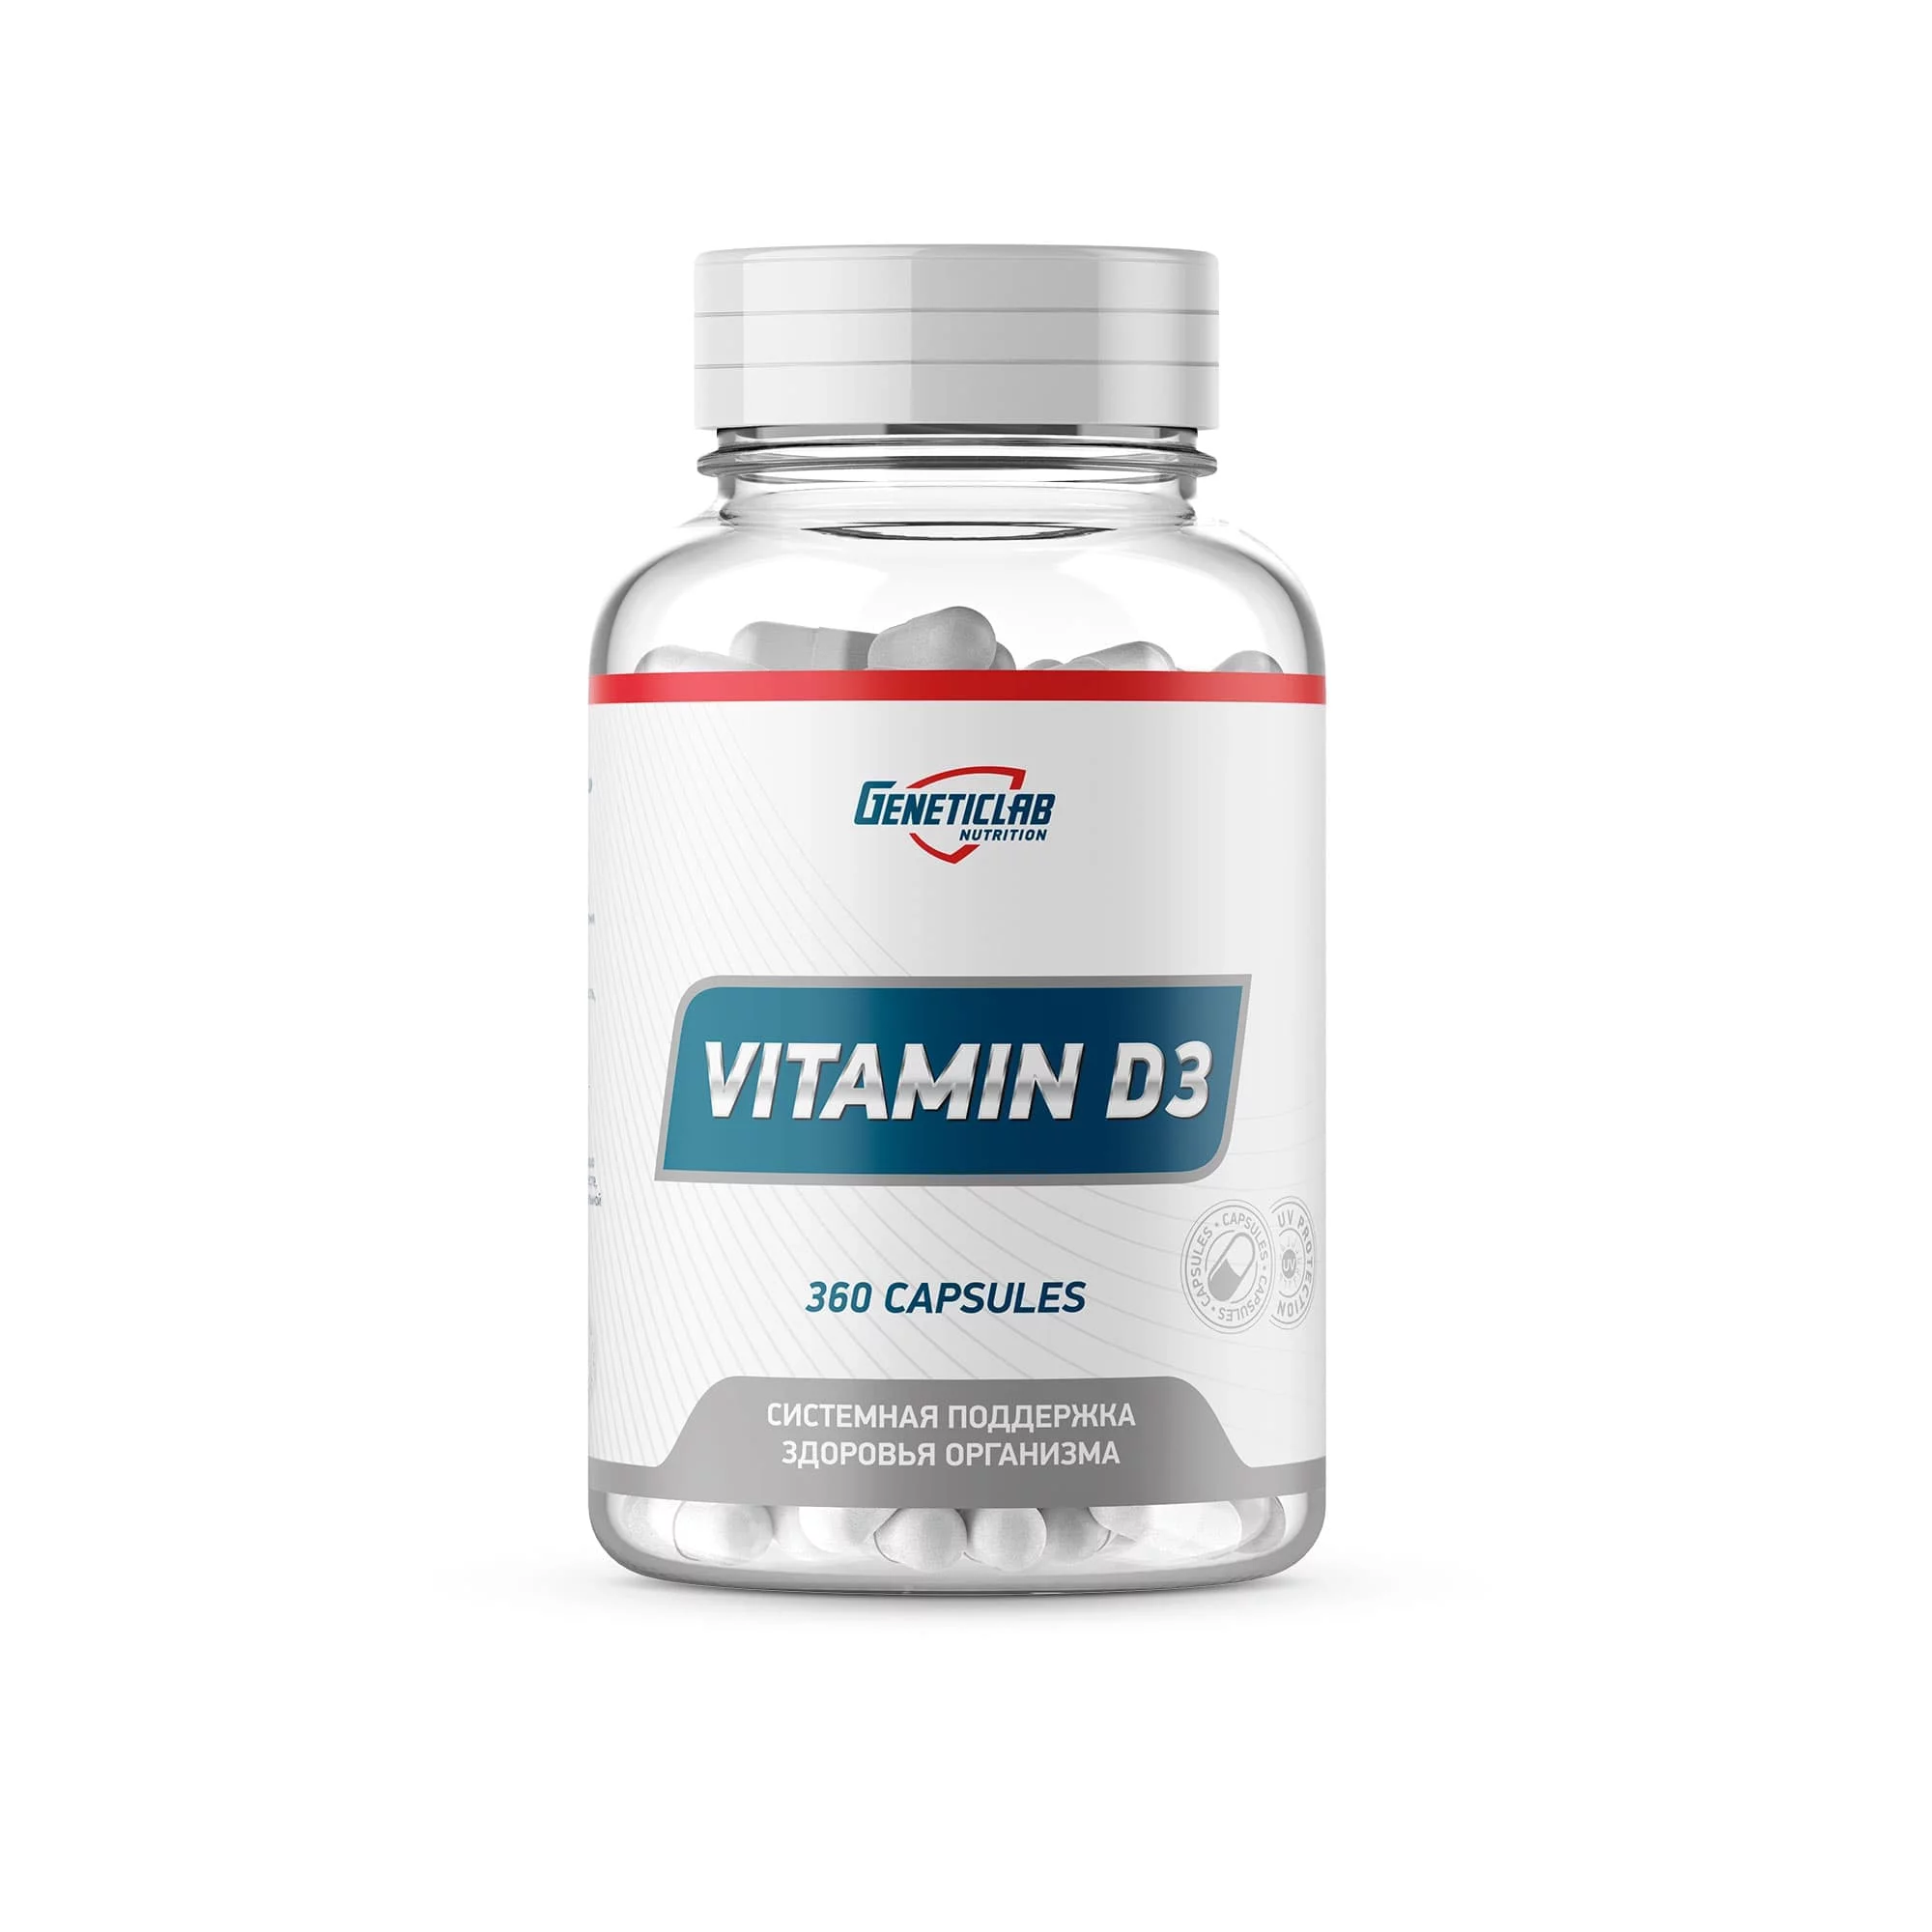 GeneticLab Vitamin D3 360 caps фото